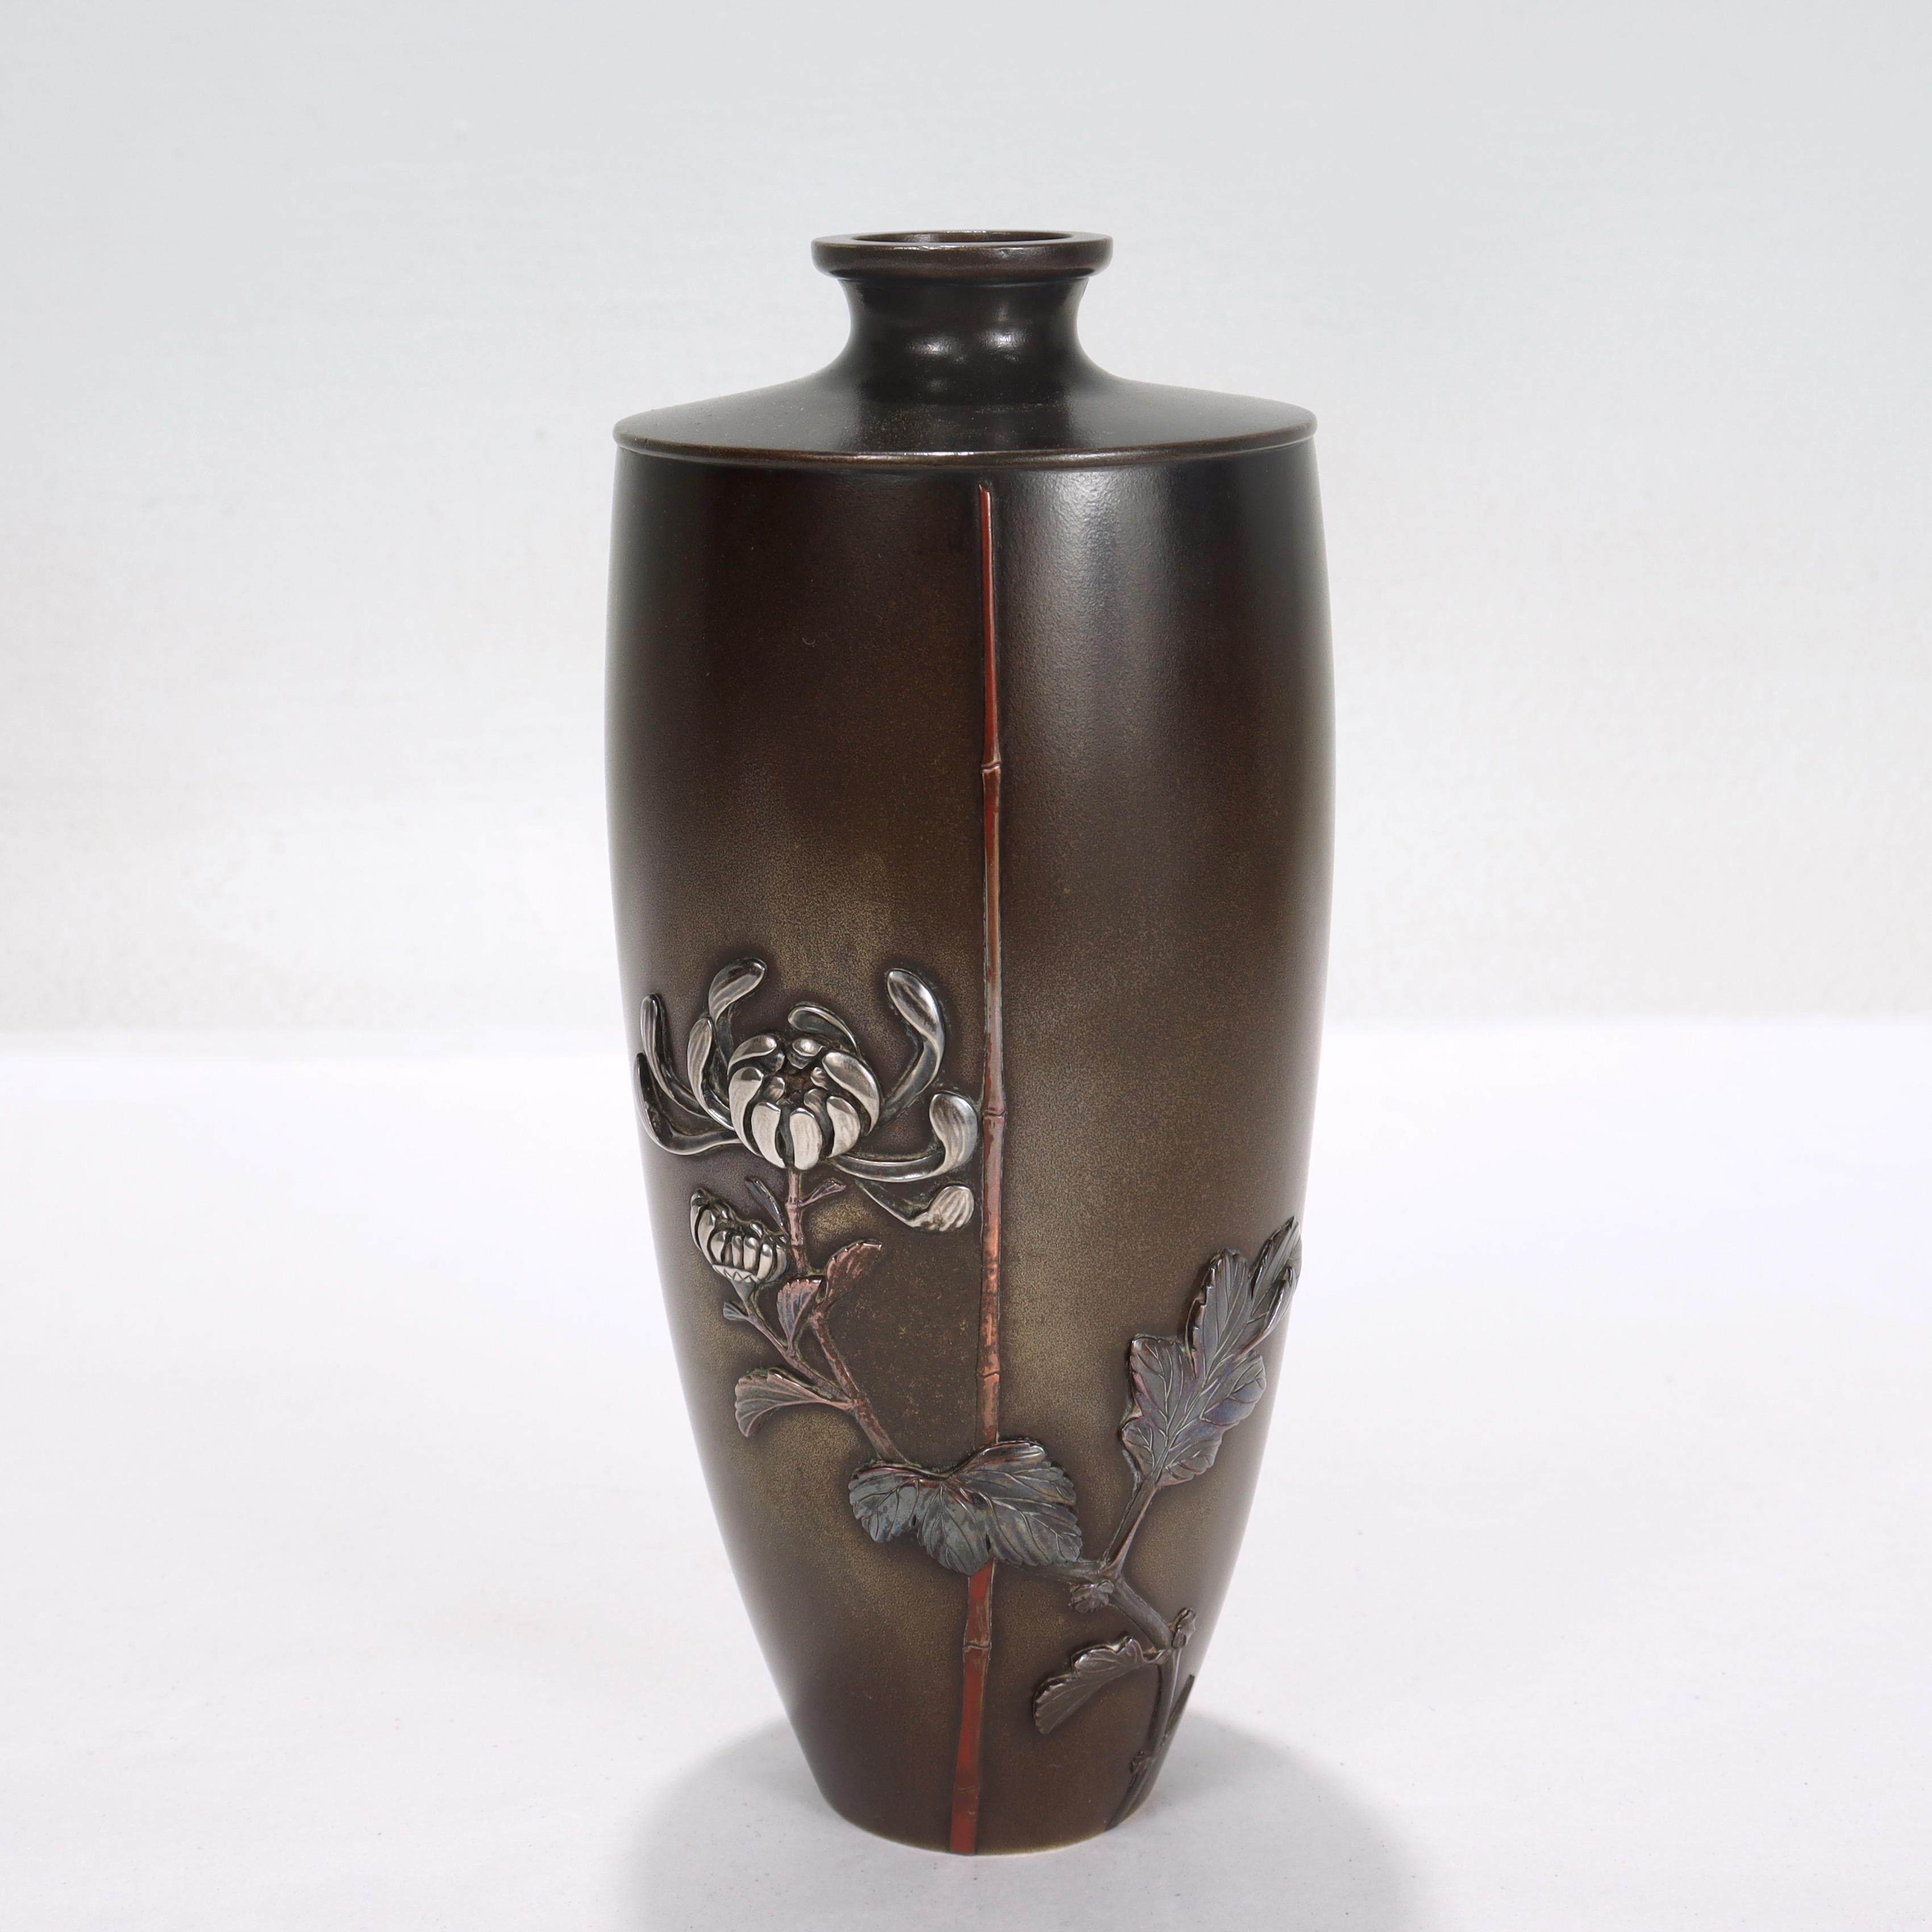 Vase en métal mixte signé de la période Meiji du Japon.

Par Miyabe Atsuyoshi pour Inoue of Kyoto.

Le corps est en bronze et décoré d'incrustations d'or, d'argent et de shibuichi en forme de chrysanthème stylisé et de bambou.

Gravé du kanji 